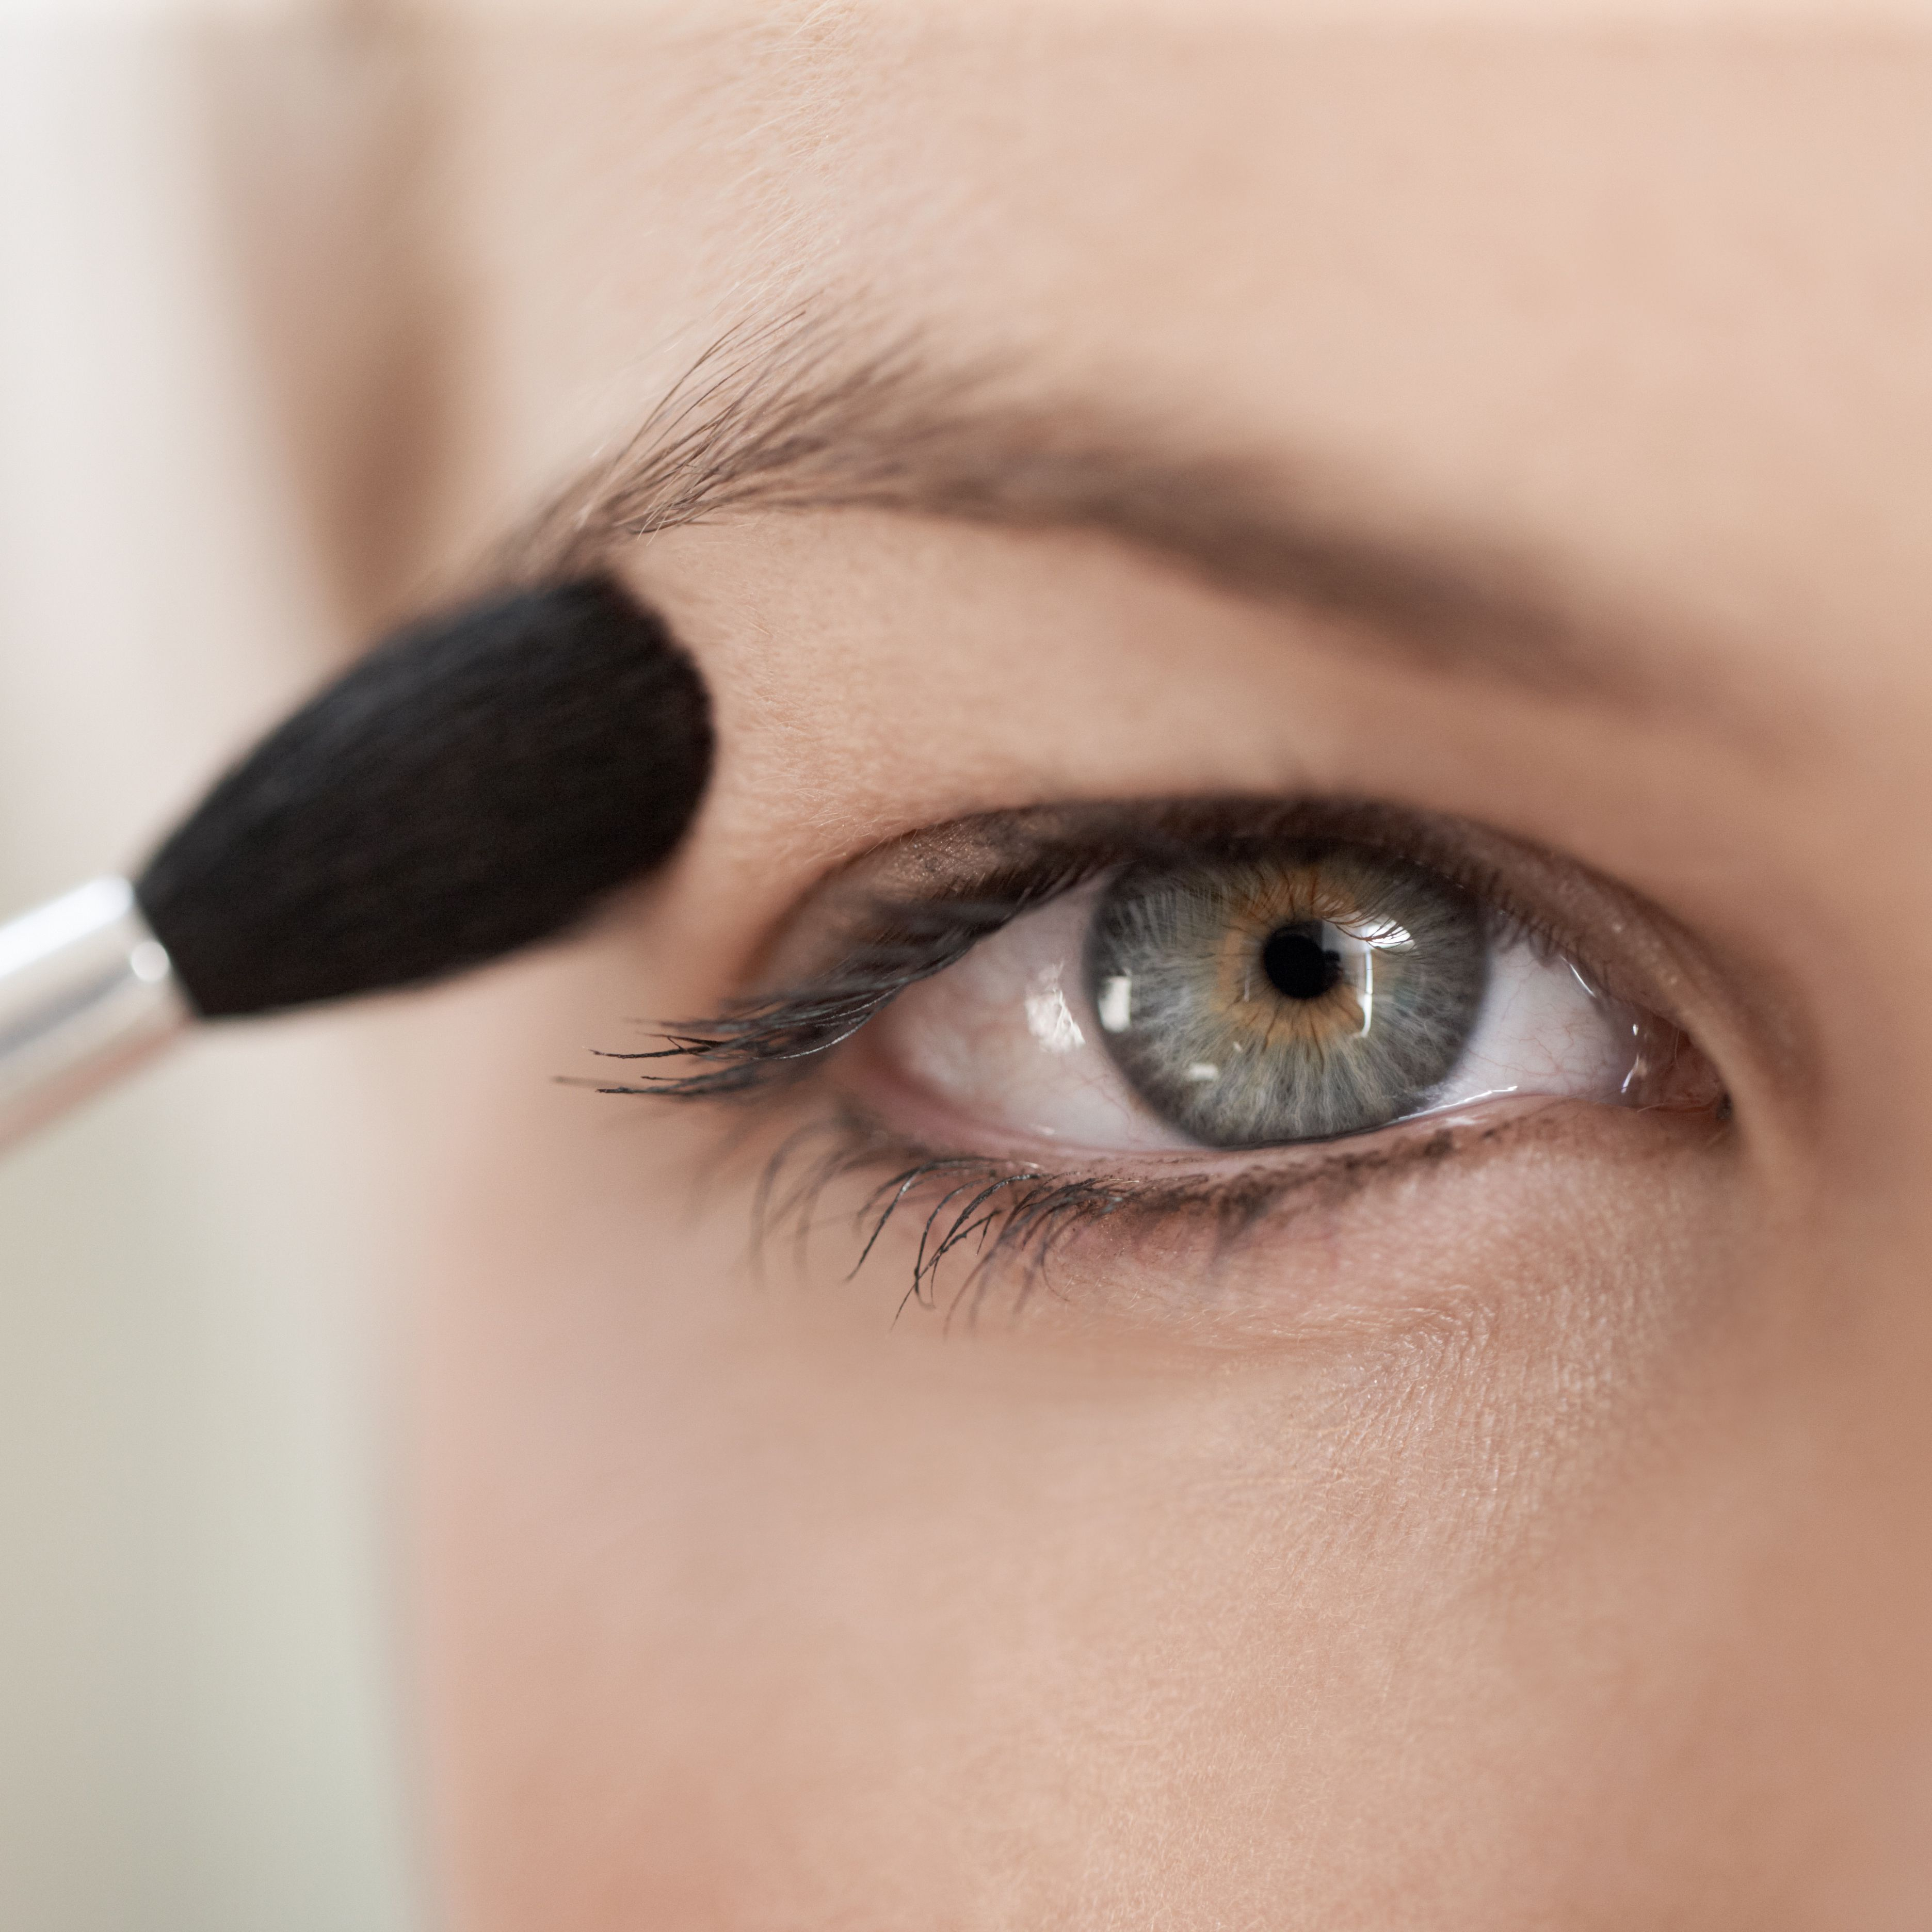 Natural Makeup Look For Green Eyes Makeup Tricks For Hooded Eyes Hooded Eyes Makeup Tips And Tricks